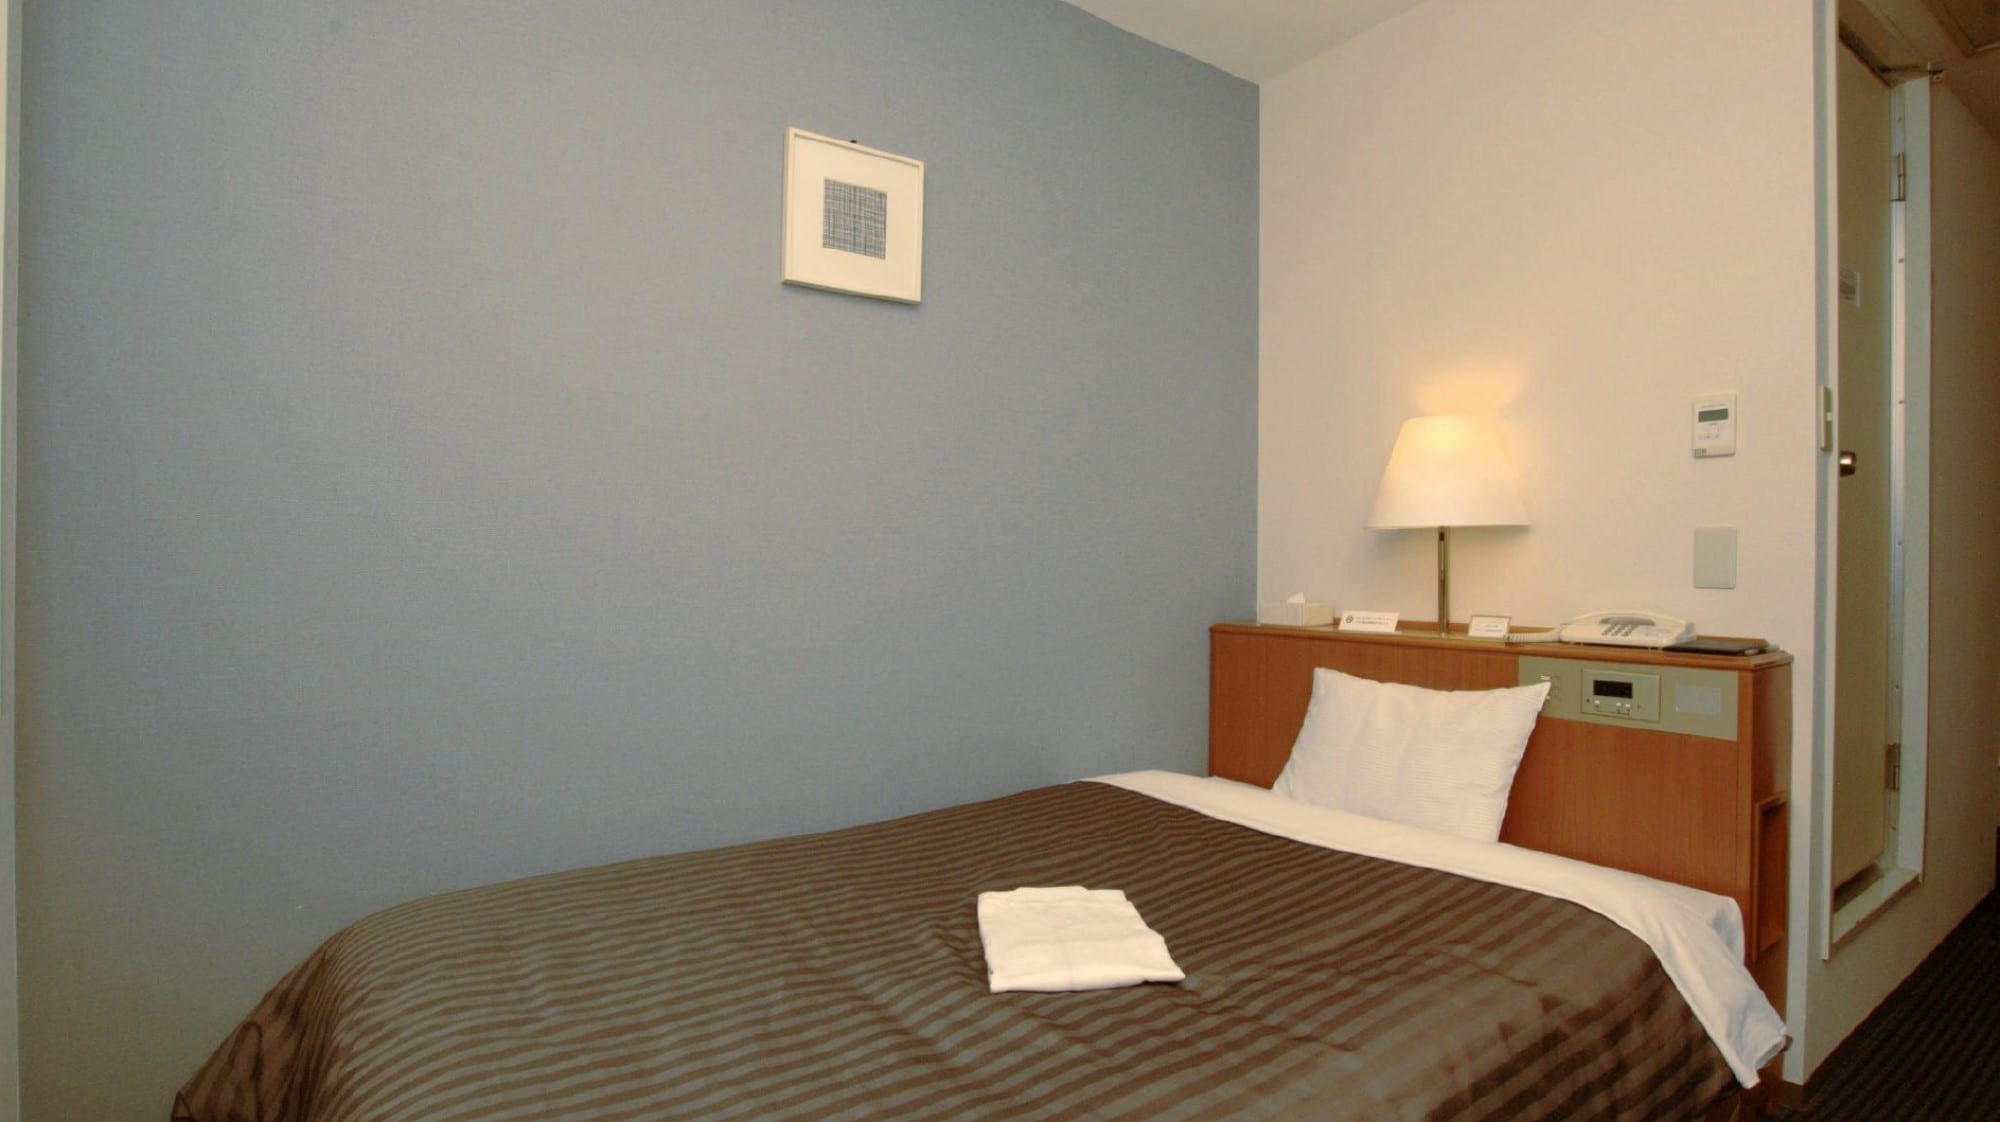 Standard single (kamar tamu bersih dan sederhana) Ukuran: 12㎡ Tempat tidur semi-double